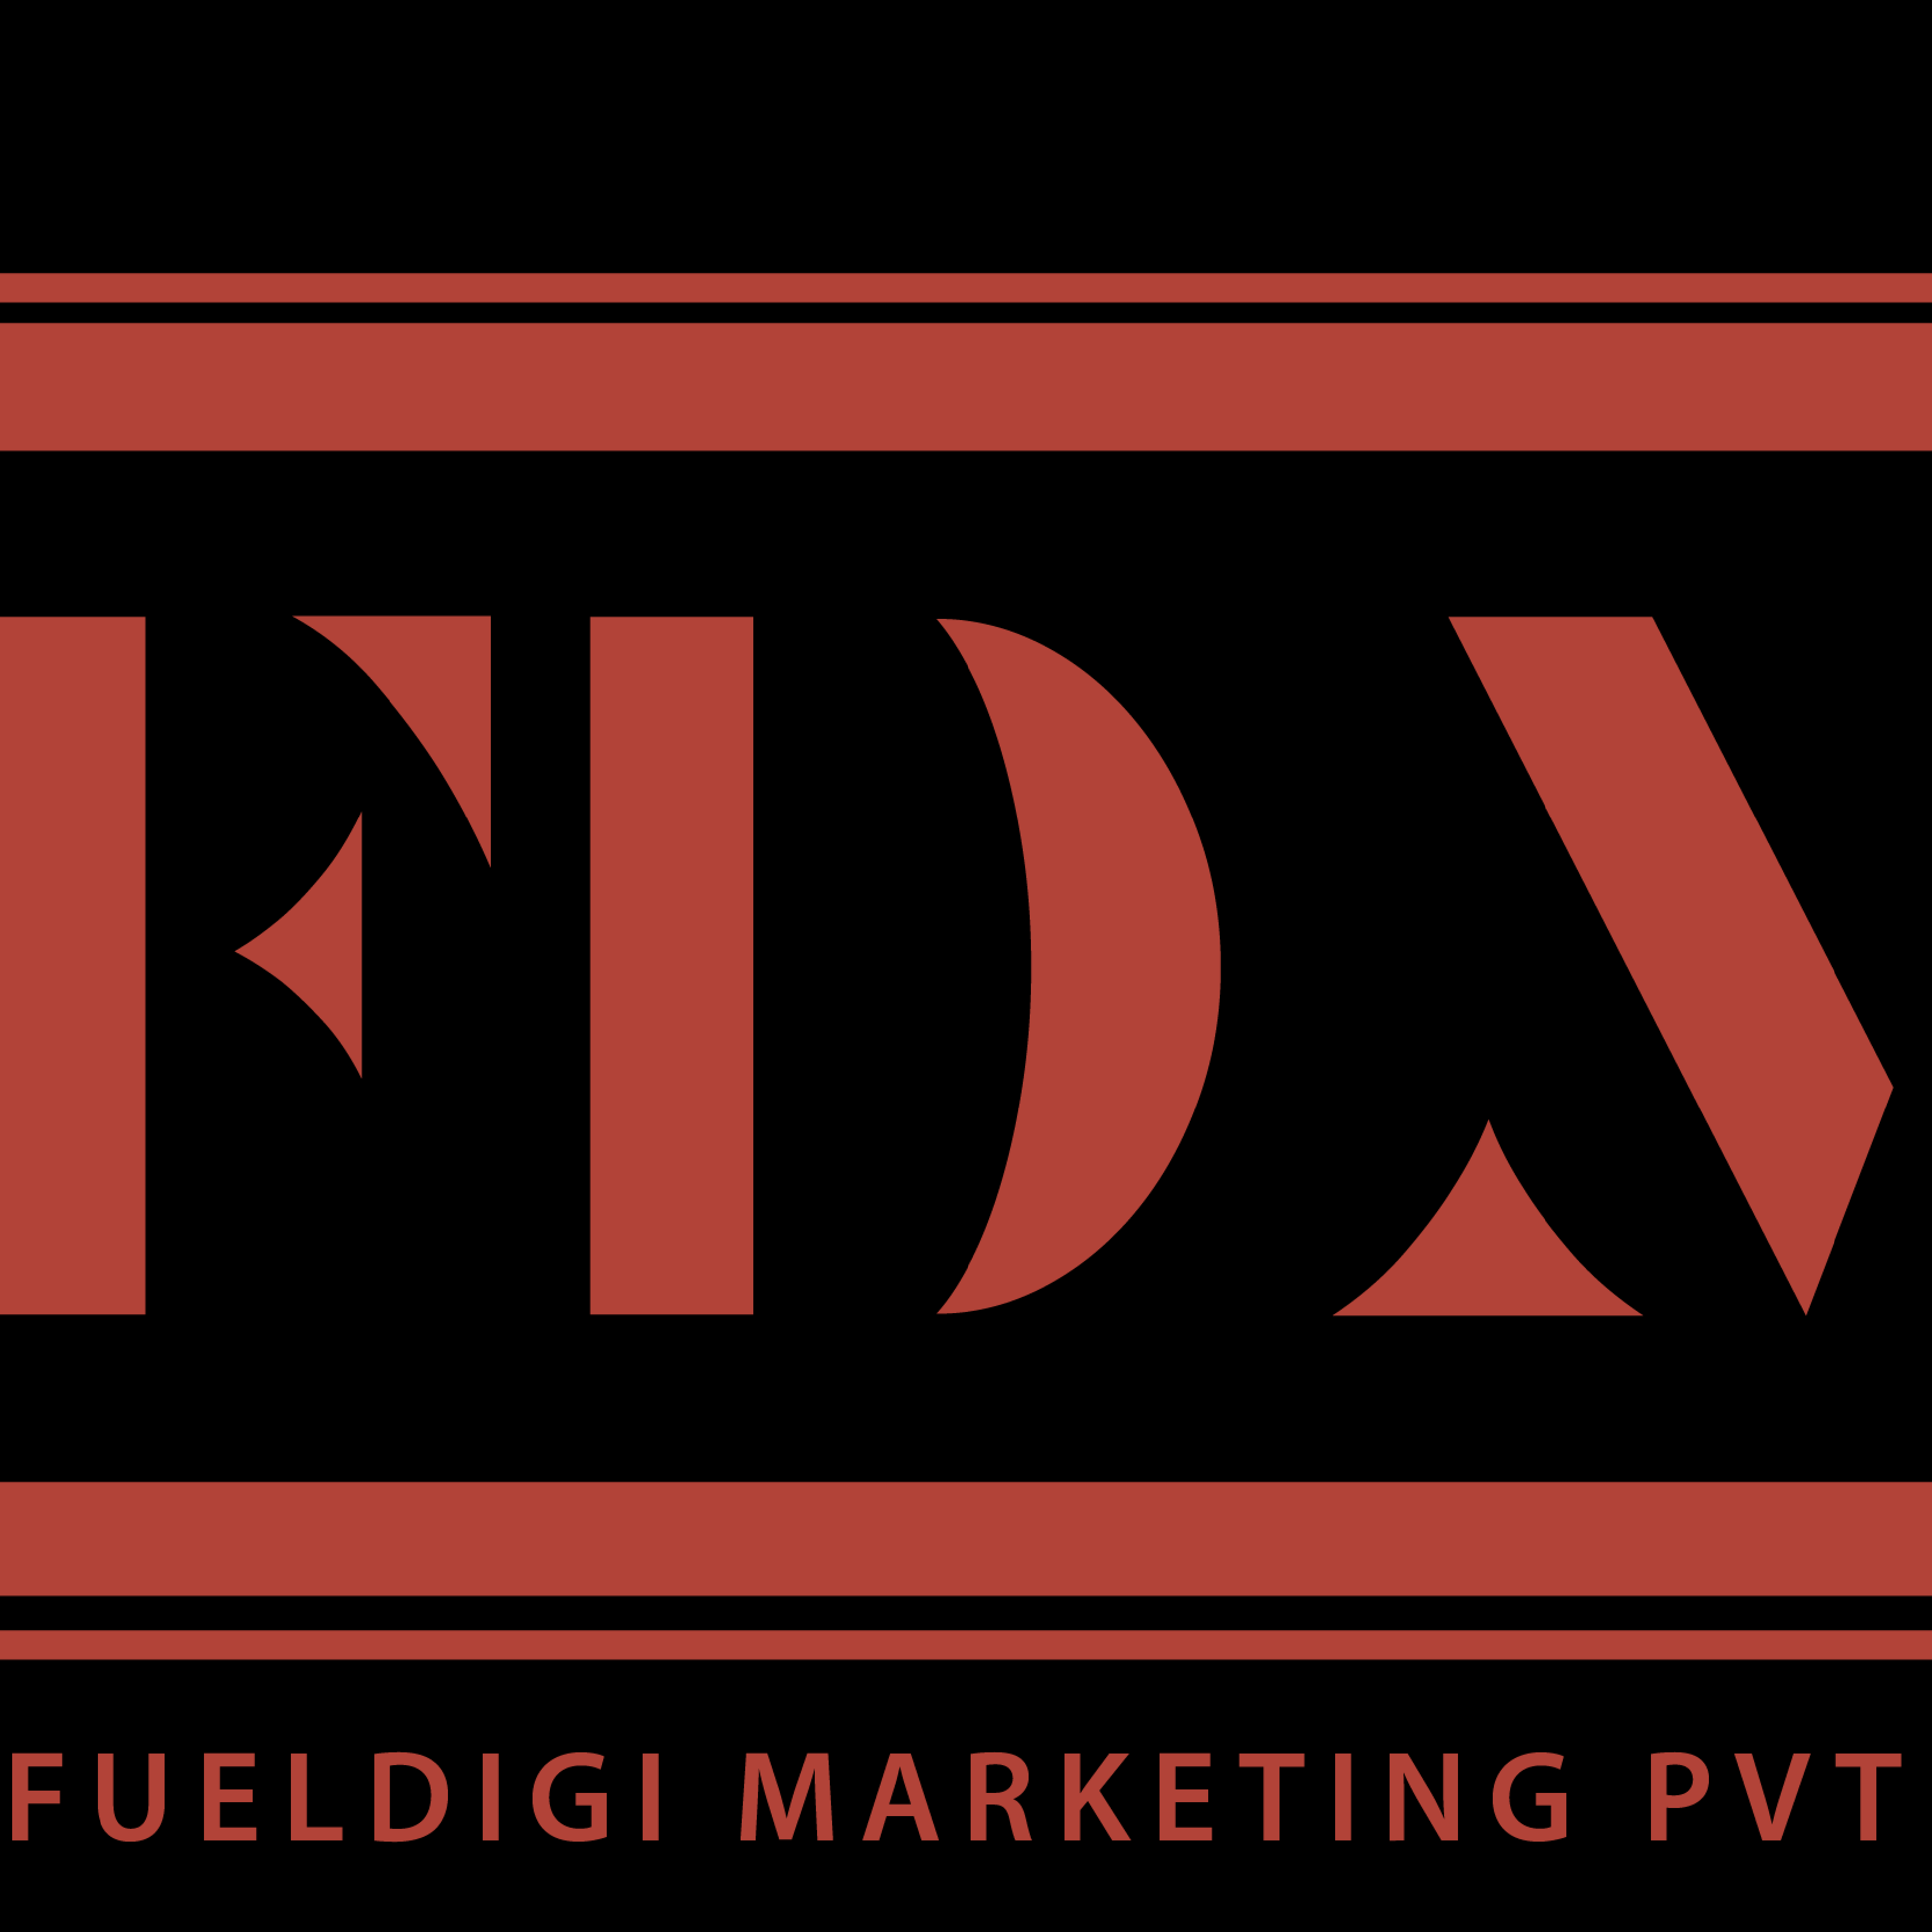 Fueldigital Marketingpvtlimited